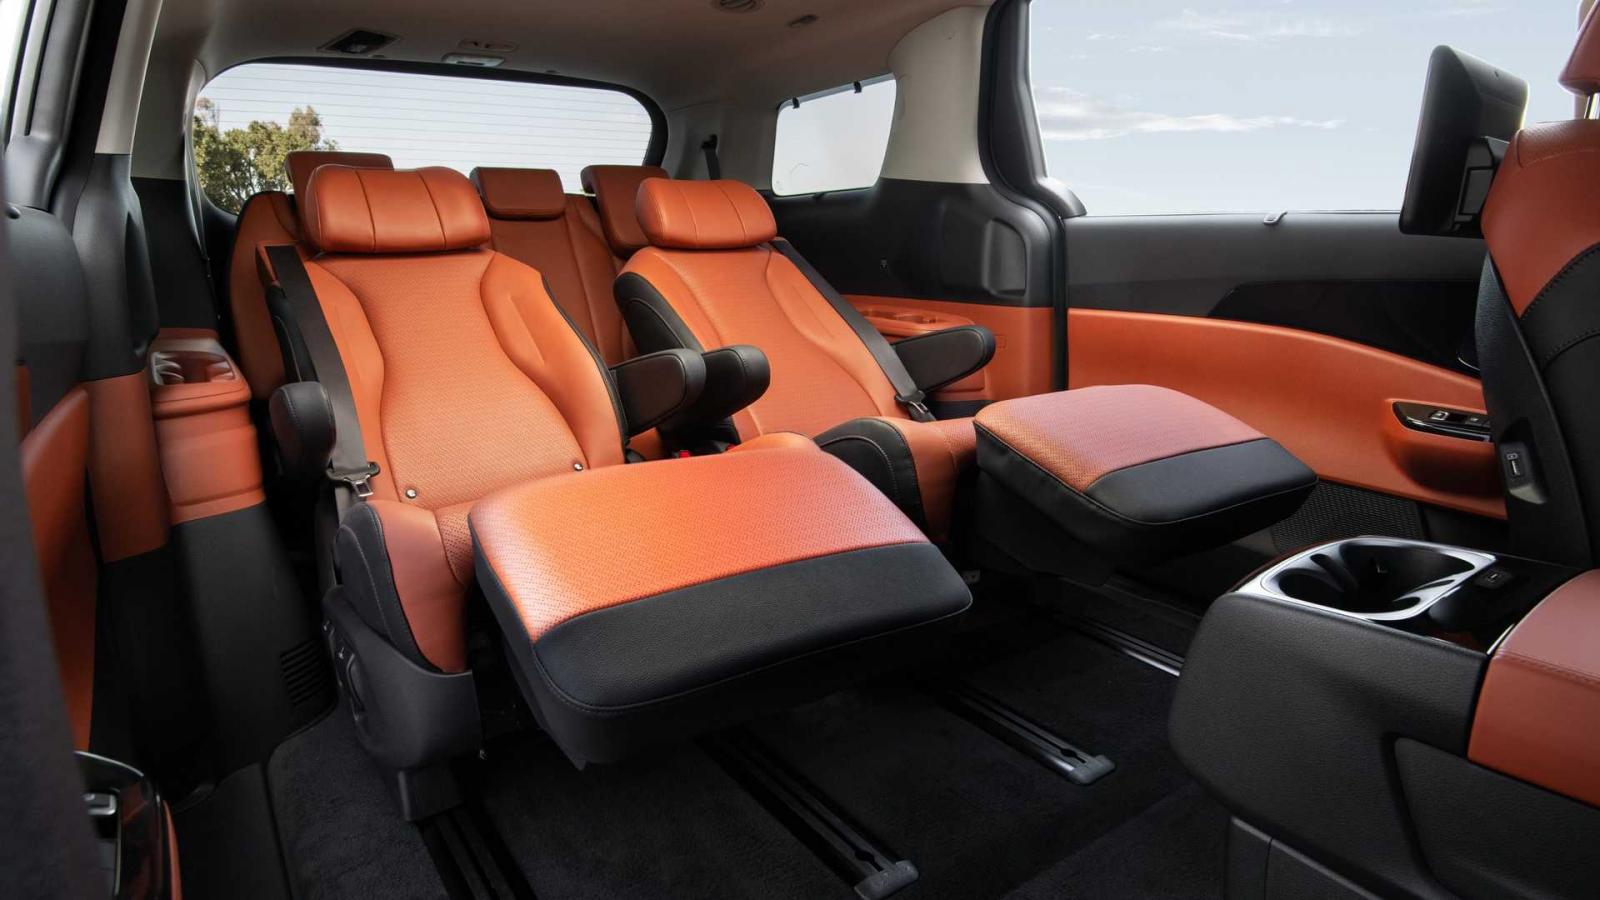 Kia Sedona 2022 mang đến trải nghiệm lái xa xỉ cho cả người lái lẫn hành khách.